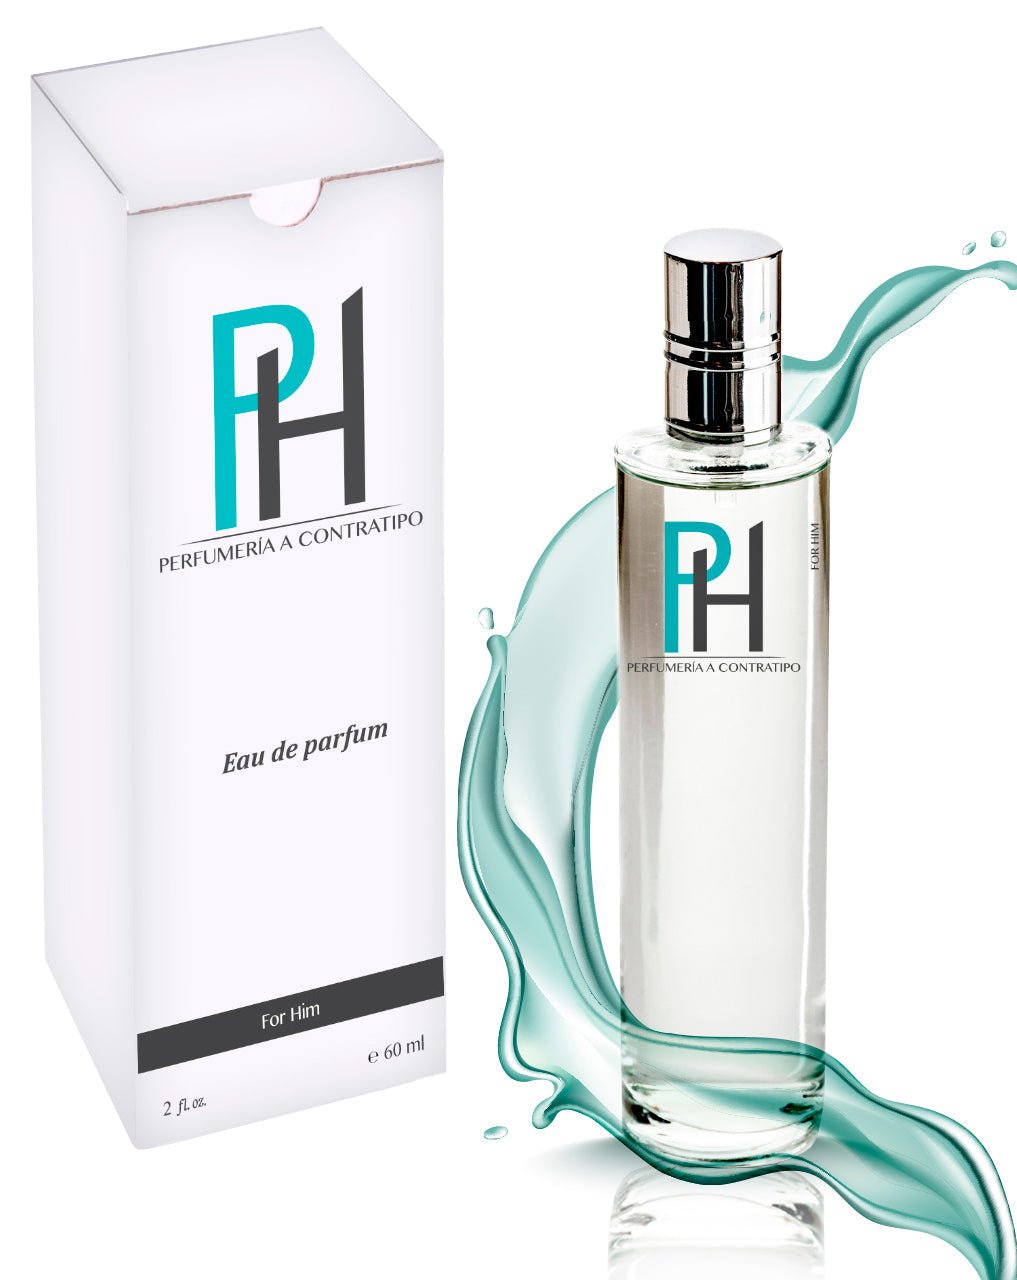 Perfume Sauvage Eau de Parfum De 60 ml - PH Perfumería a Contratipo